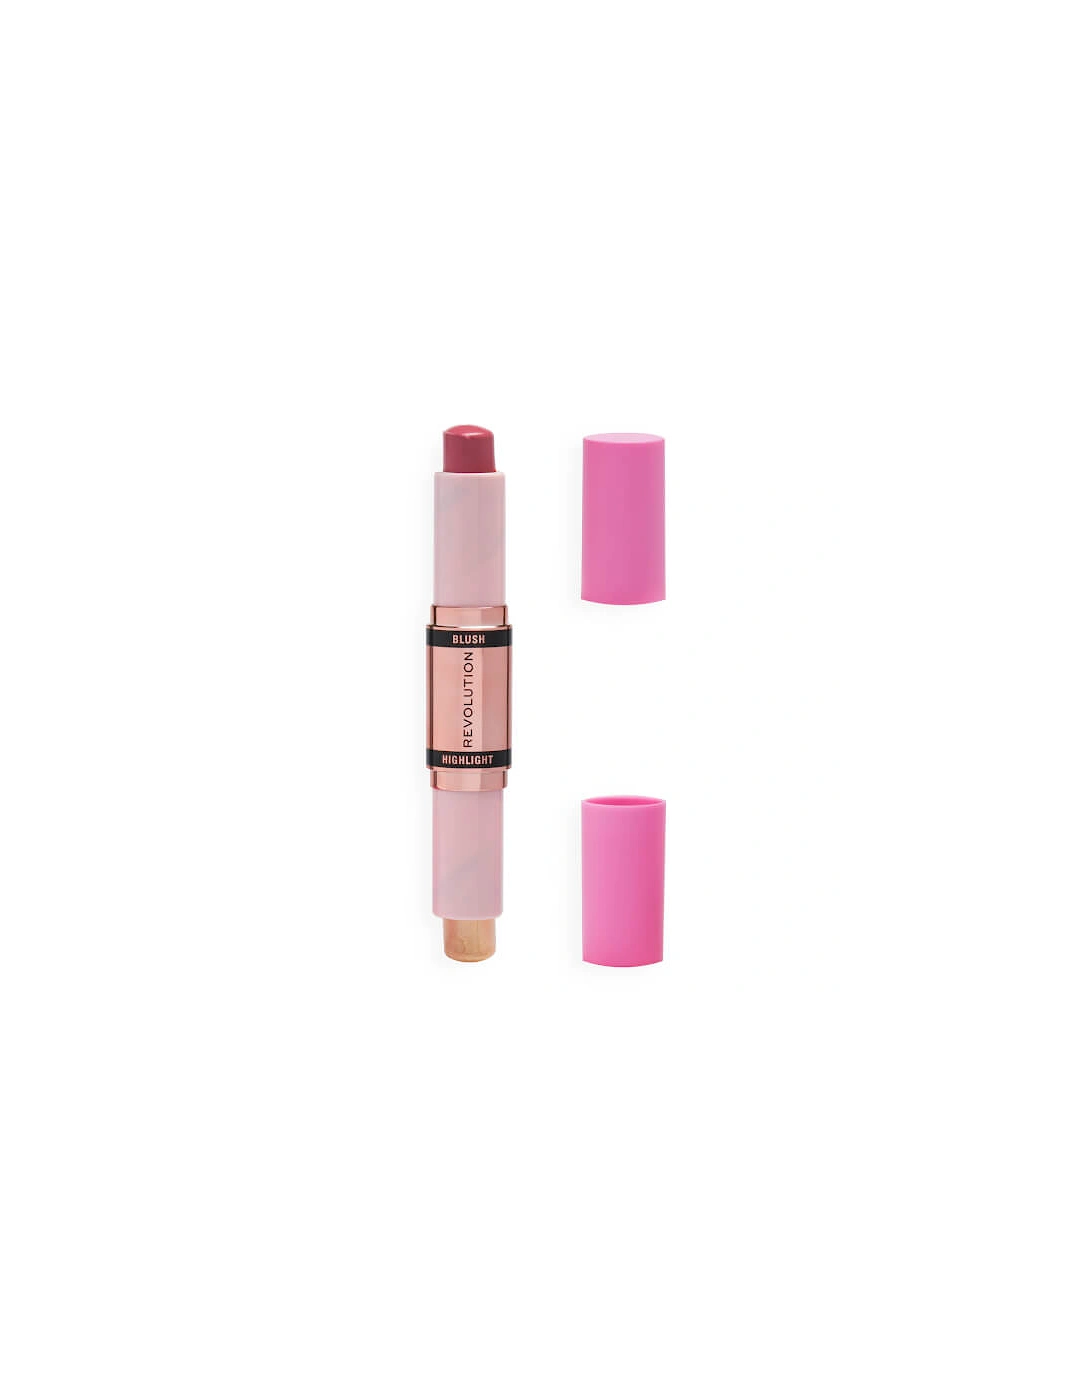 Makeup Blush and Highlight Stick - Mauve Glow, 2 of 1